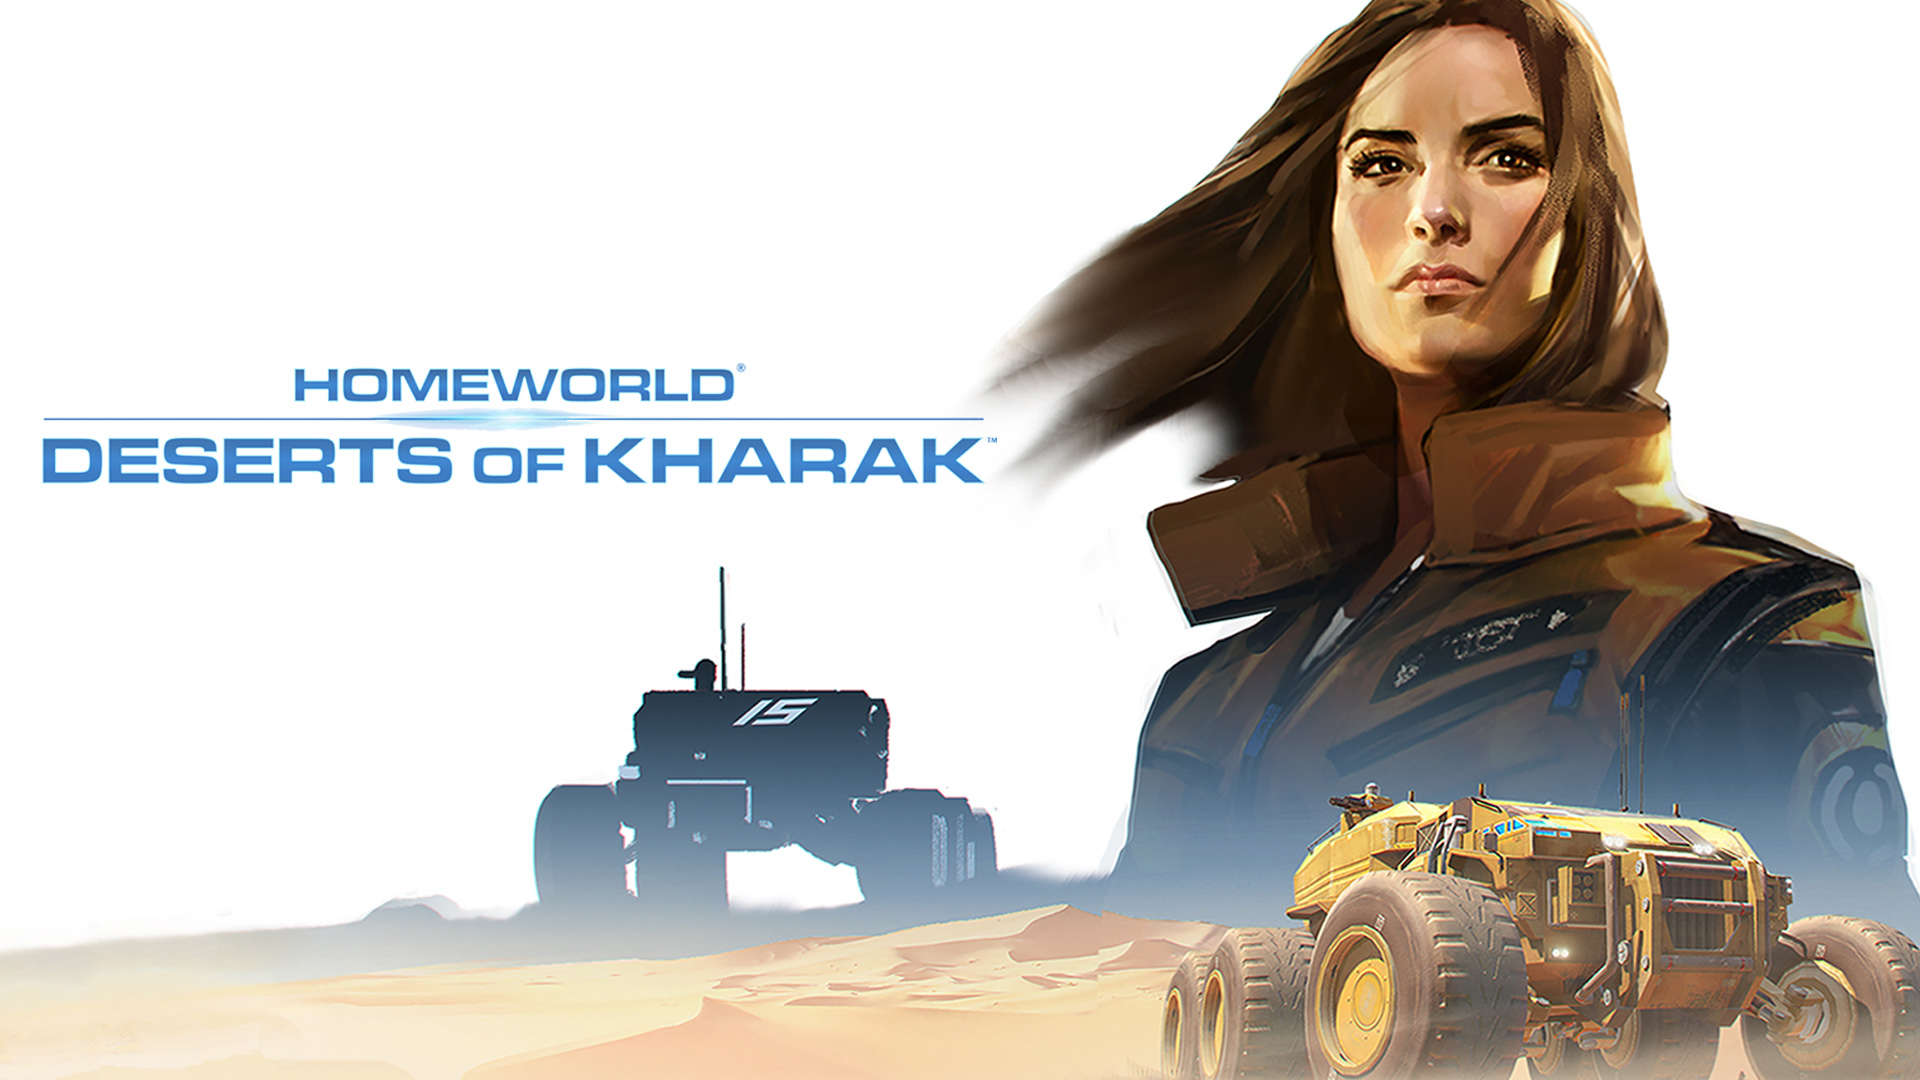 Tải miễn phí game chiến lược hấp dẫn Homeworld: Deserts of Kharak - Ảnh 2.